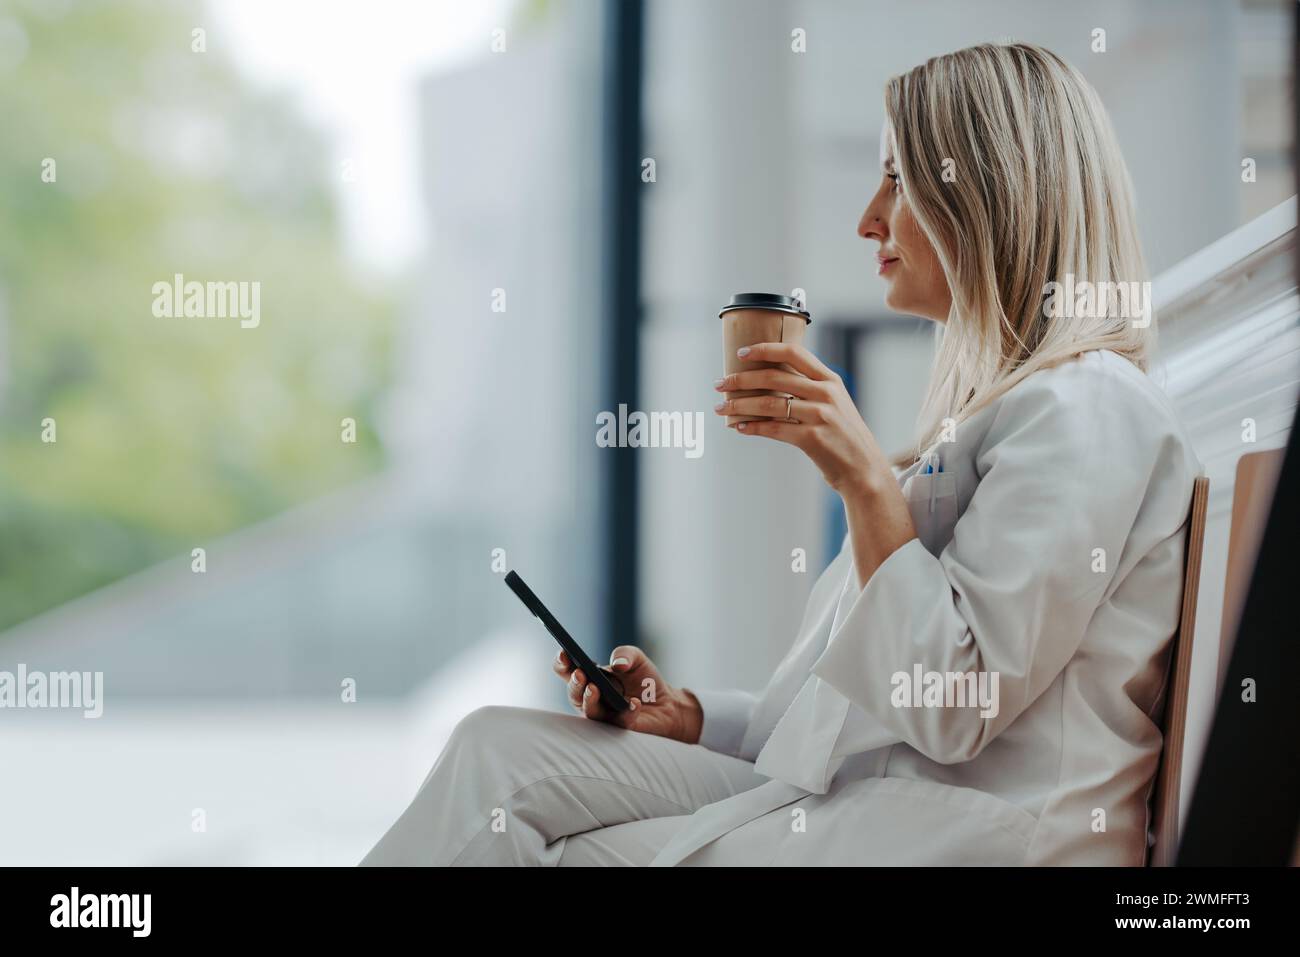 Die schöne Ärztin macht während ihrer Arbeitsschicht im Krankenhaus eine Pause, trinkt Kaffee und scrollt auf dem Smartphone. Seitenansicht. Stockfoto